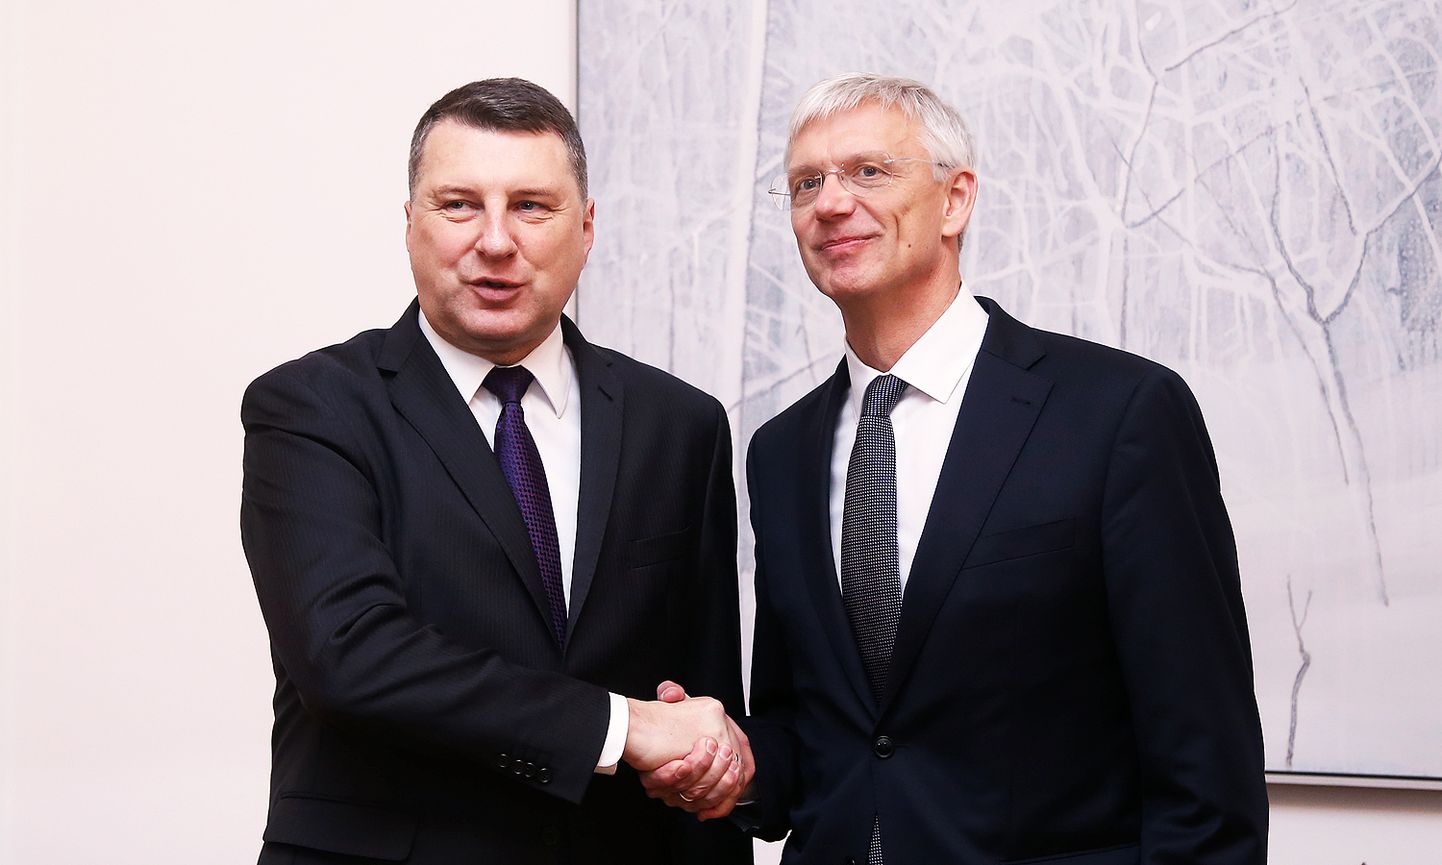 Valsts prezidents tiekas ar "Jaunā Vienotība" Ministru prezidenta amata kandidātu Krišjāni Kariņu